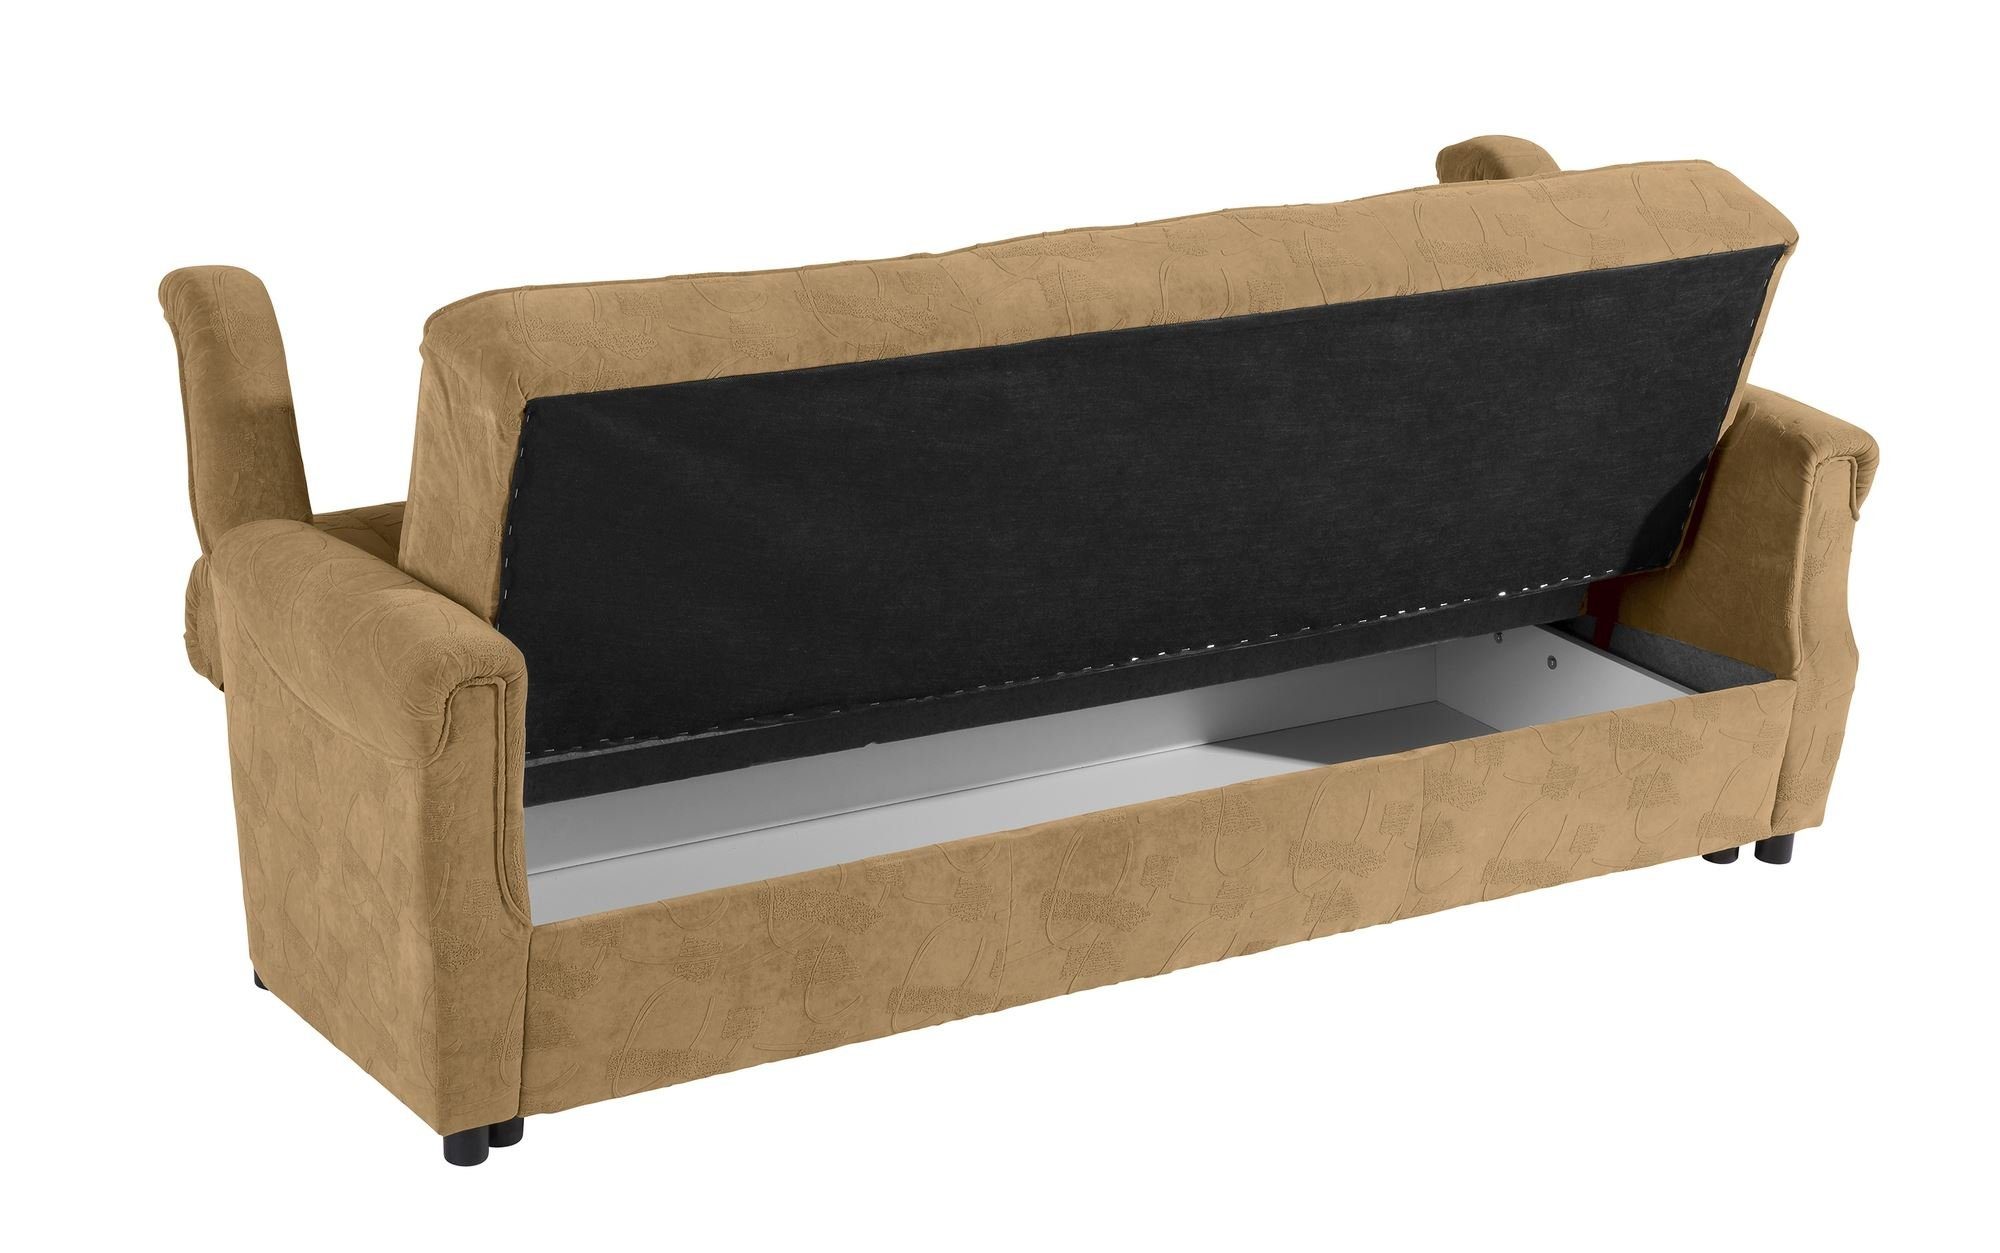 Sitz Microf, Sofa Sparpreis mit aufm Teile, Bezug Versand hochwertig Kostenlosem 3-Sitzer 1 Sofa Bettfunktion Karuna inkl. 58 verarbeitet,bequemer Kessel